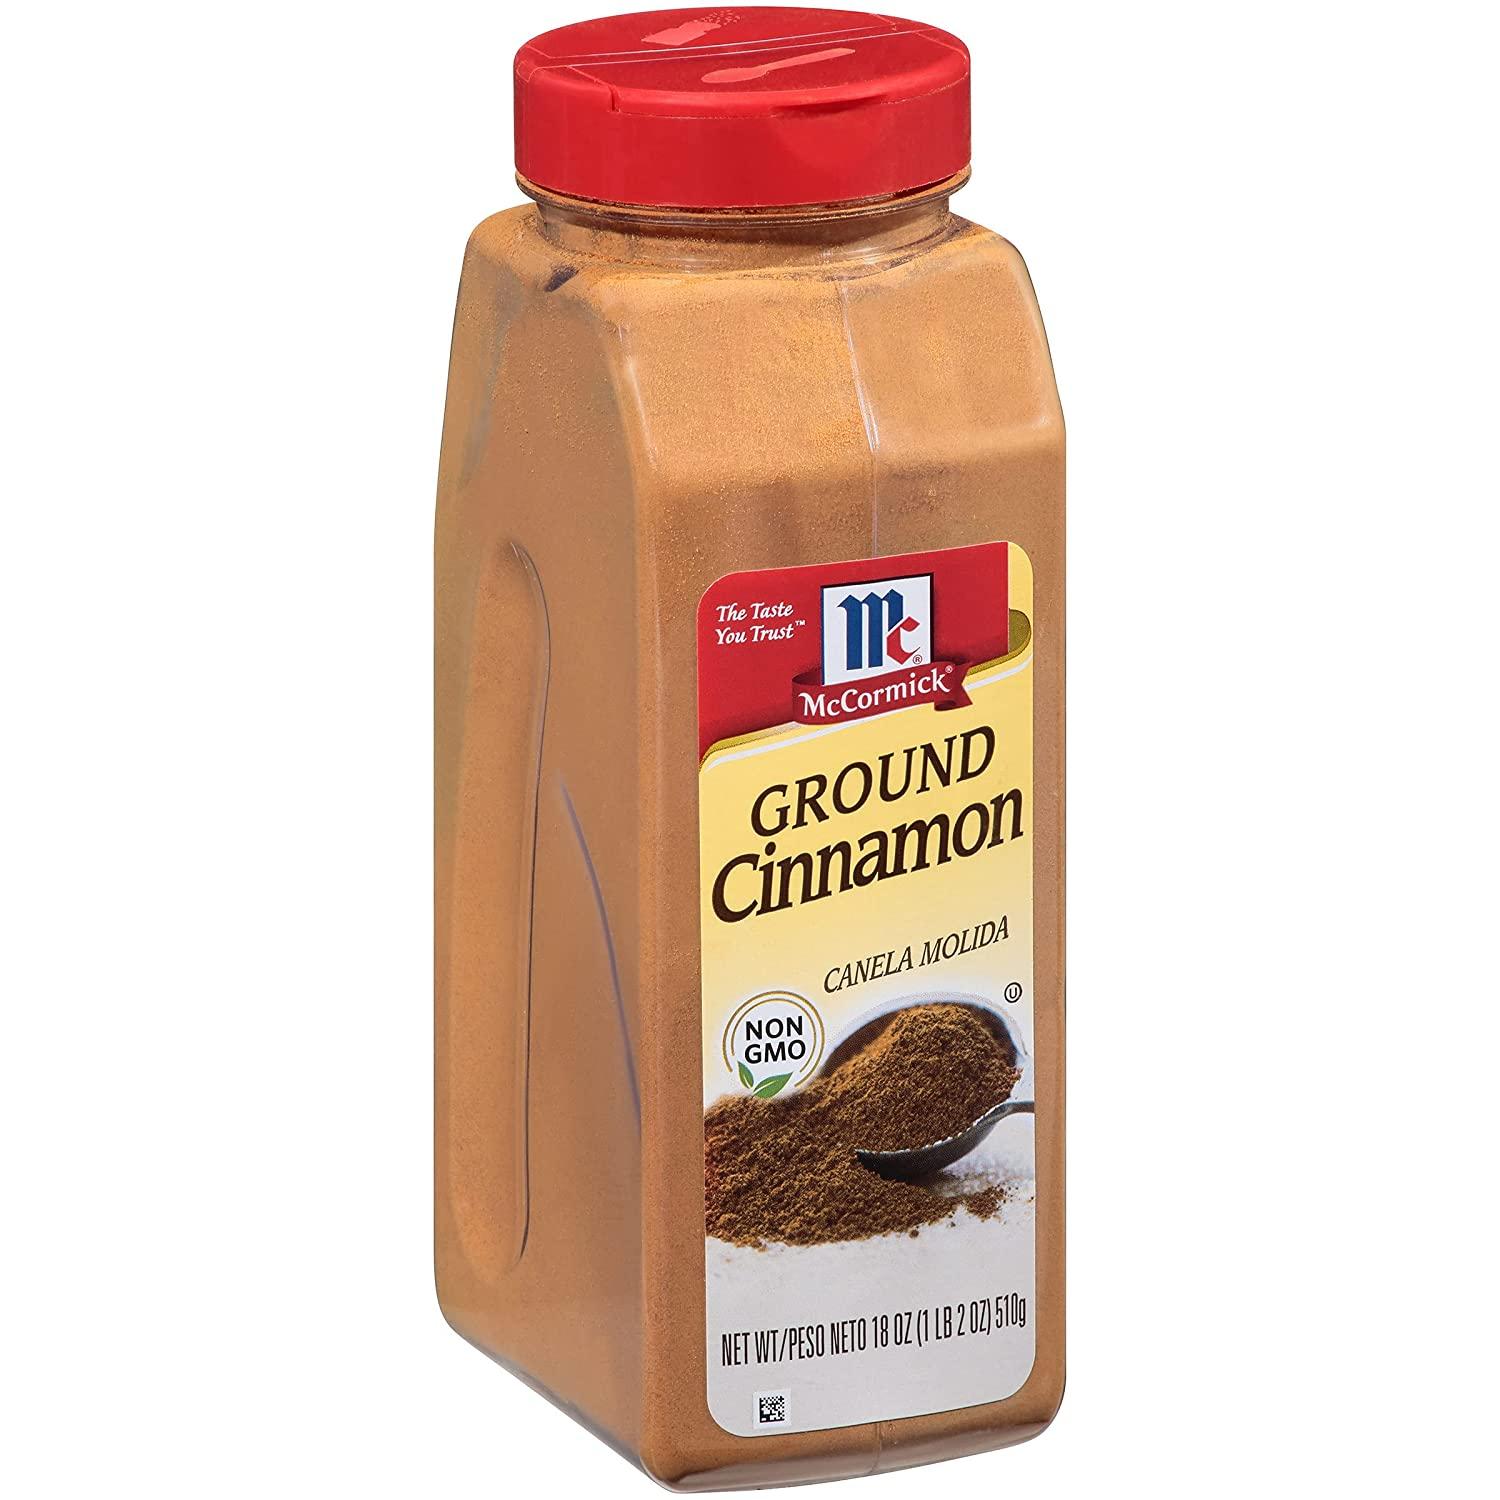 18Oz McCormick Ground Cinnamon for $5.98